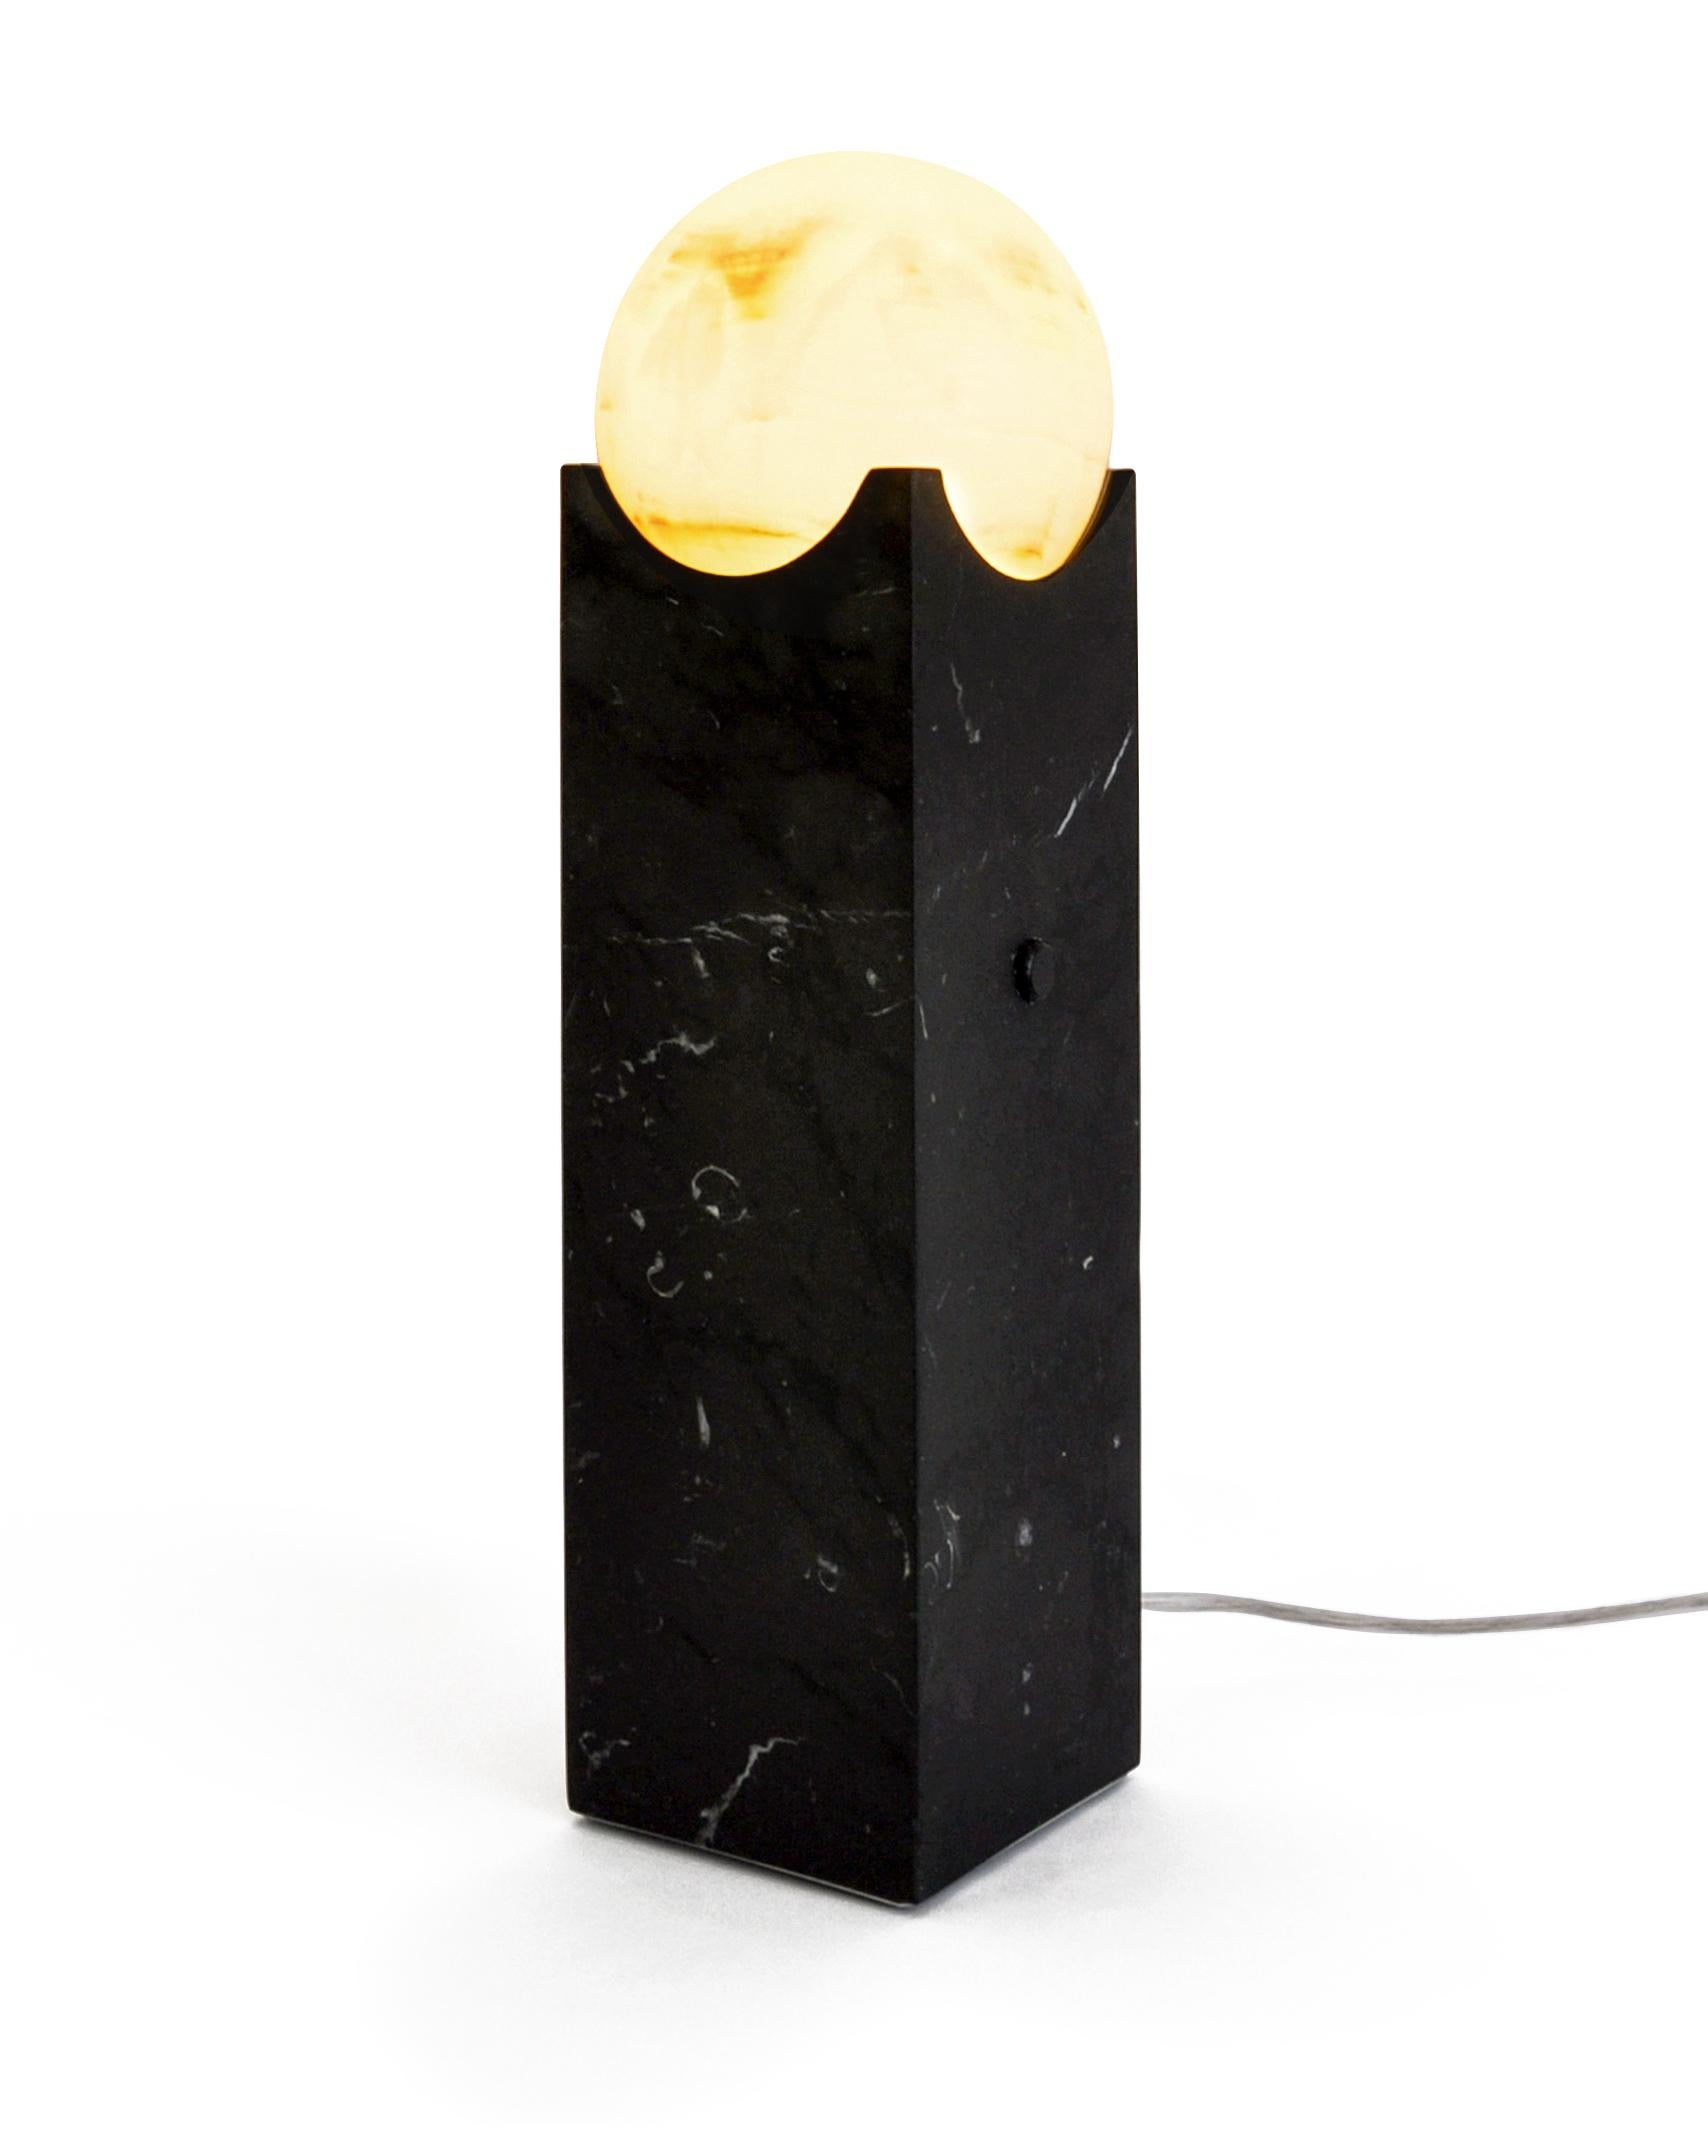 Grande lampe à éclipse en marbre Paonazzo satiné ou Marquina noir. Il donne une touche distincte et élégante à votre maison.

Chaque pièce est en quelque sorte unique (chaque bloc de marbre est différent par ses veines et ses nuances) et fabriquée à